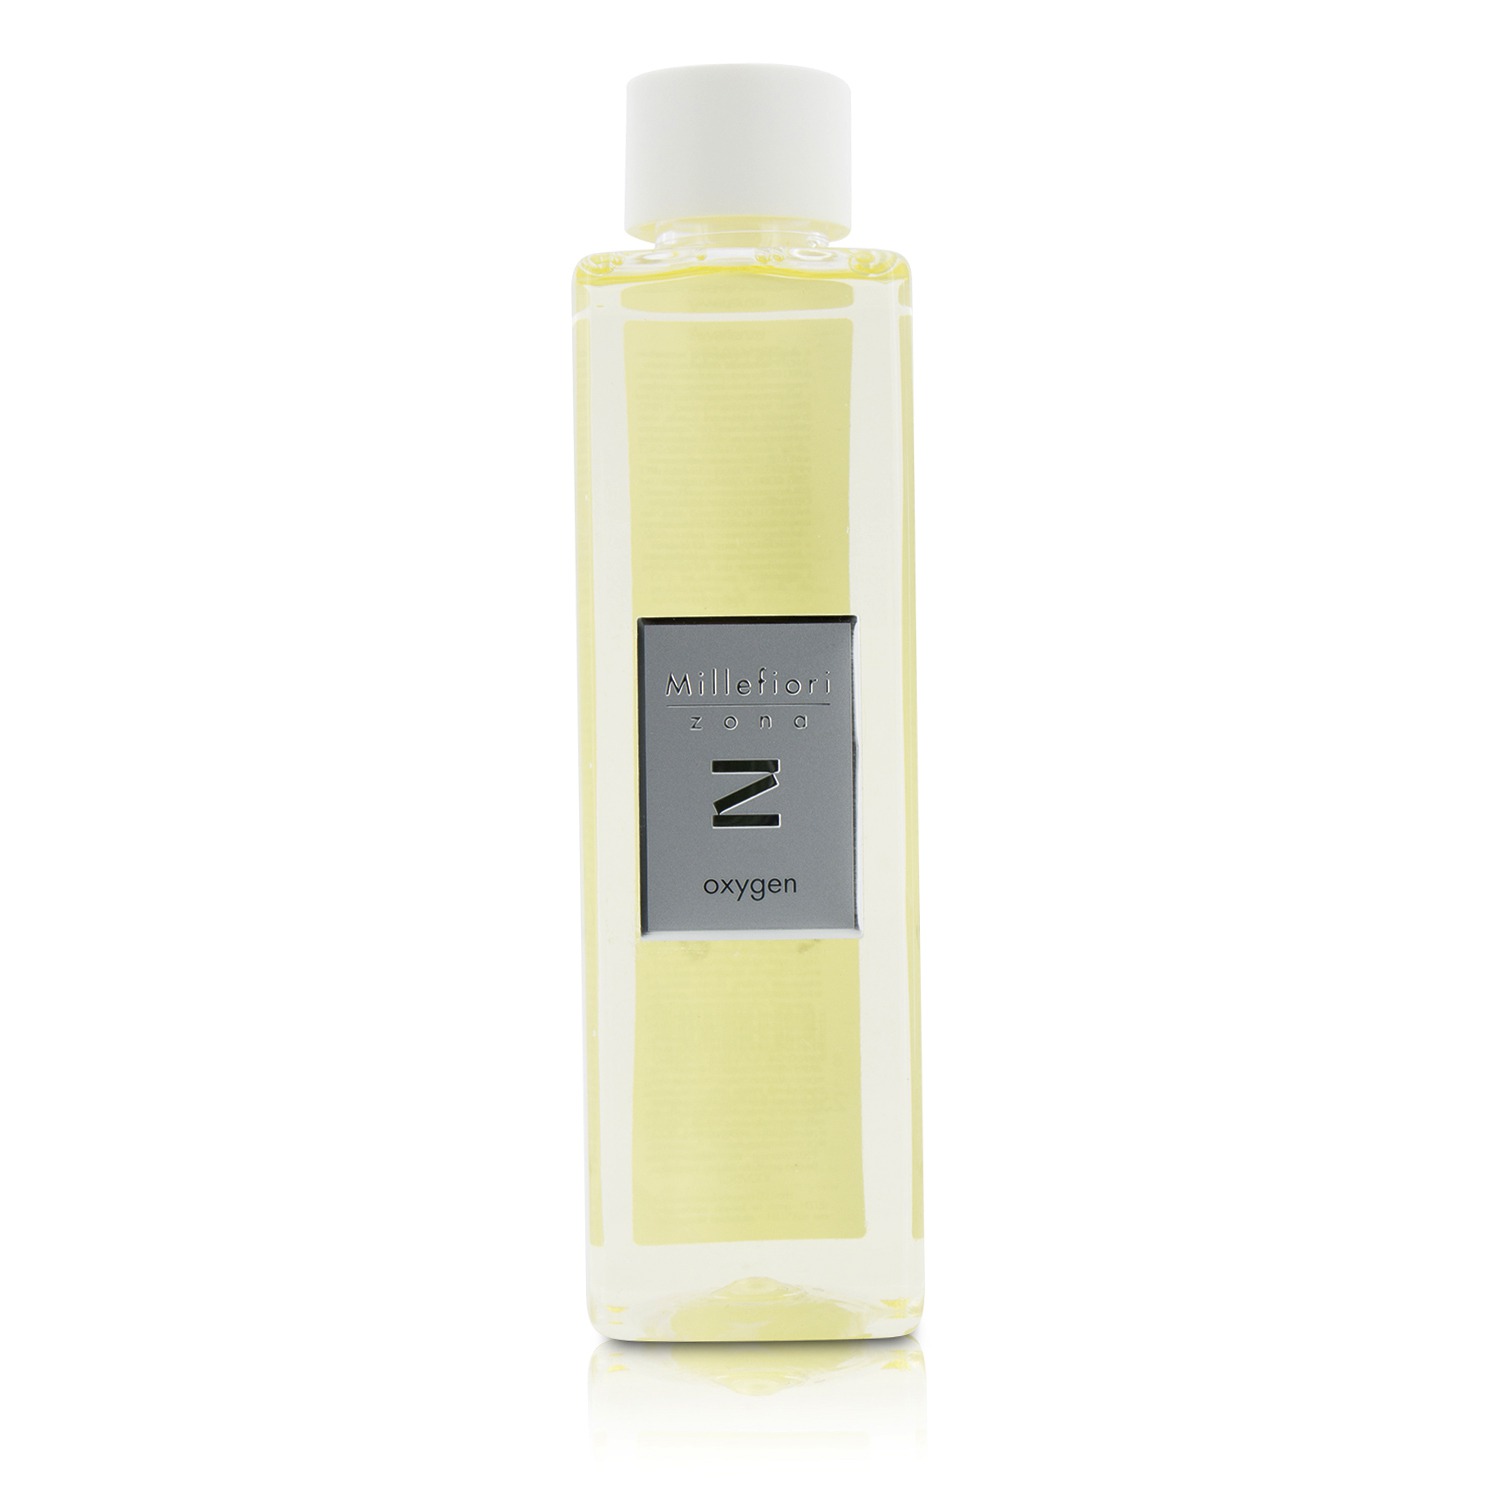 Zona Fragrance Diffuser Refill - Oxygen Millefiori Image